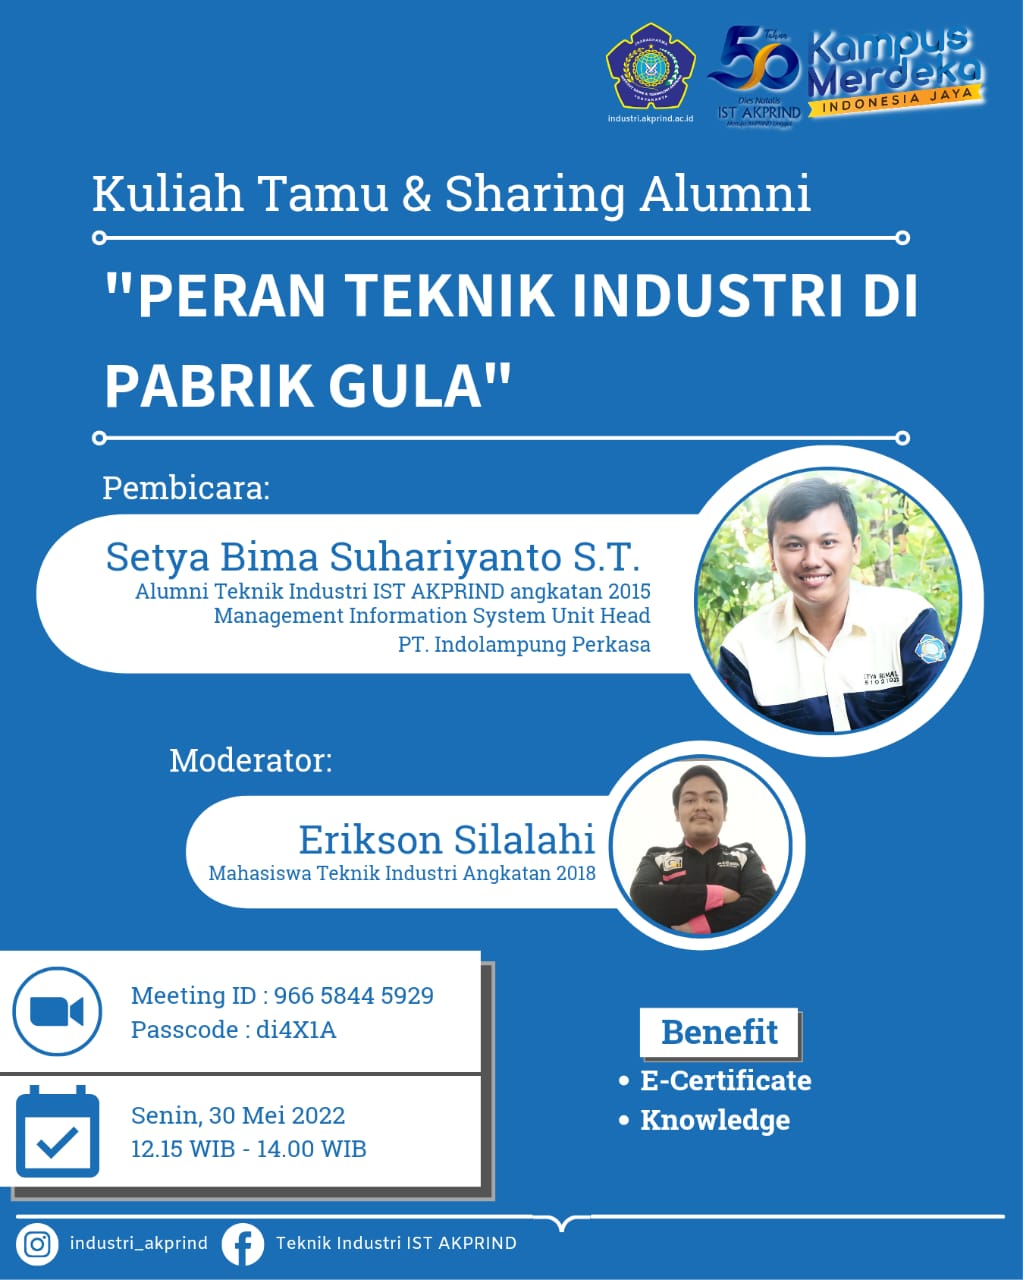 Hadiri Webinar Kuliah Tamu & Sharing Alumni “Peran Teknik Industri di Pabrik Gula”